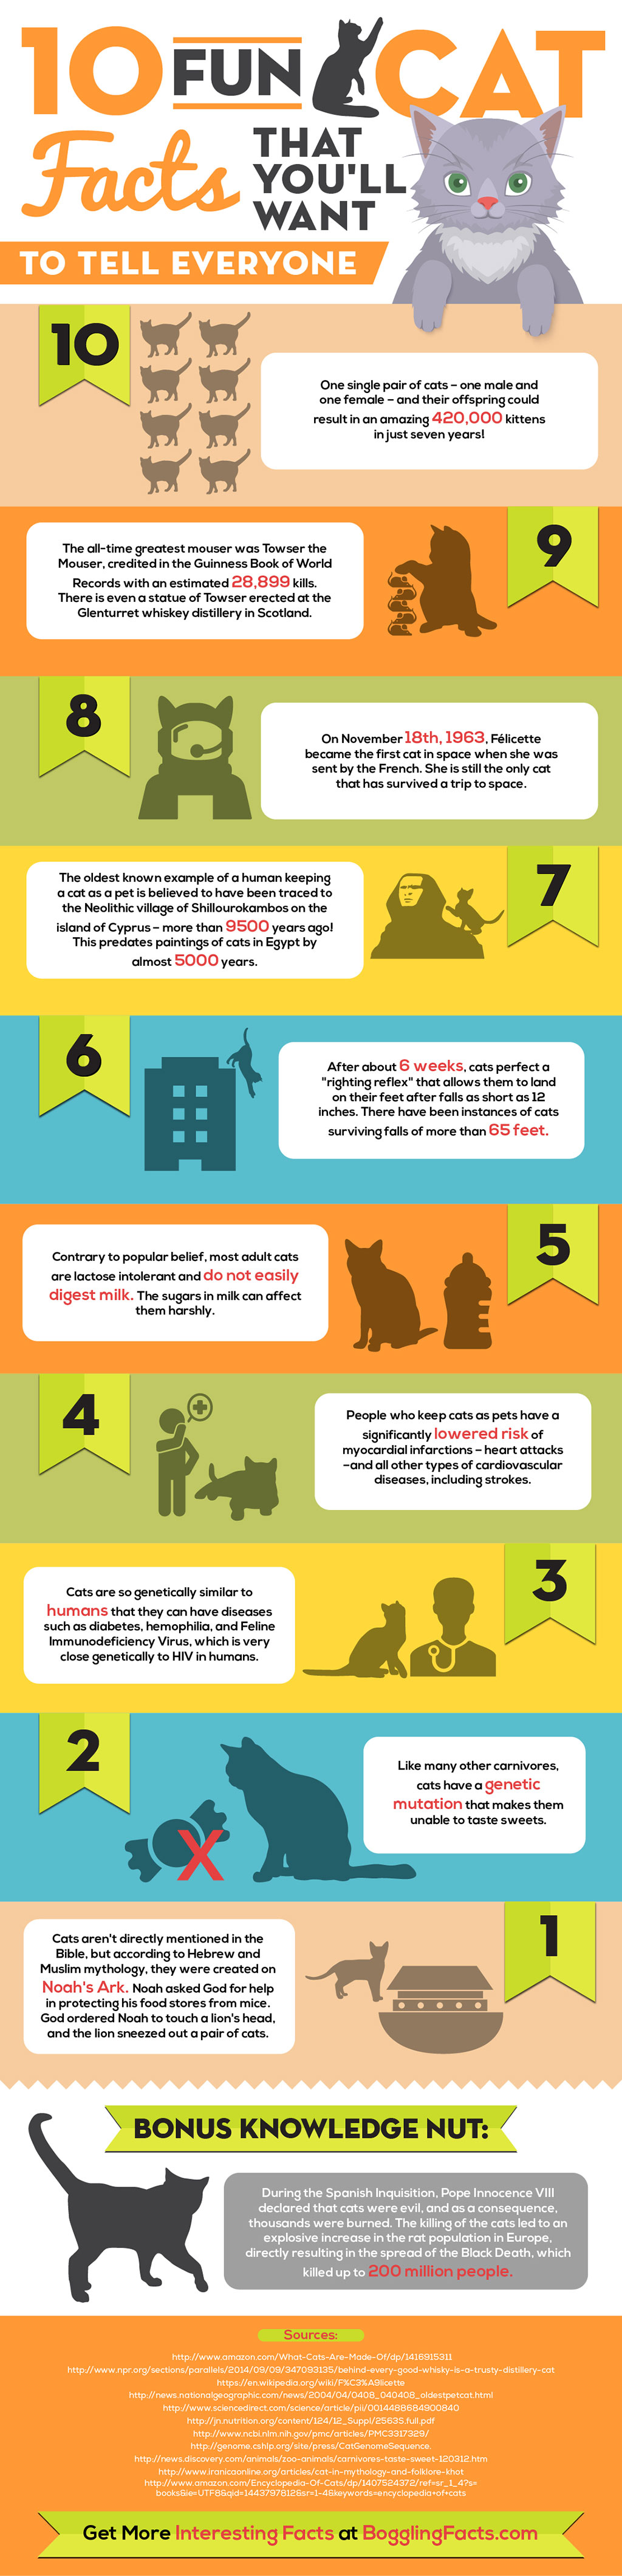 10 Fun Cat Facts